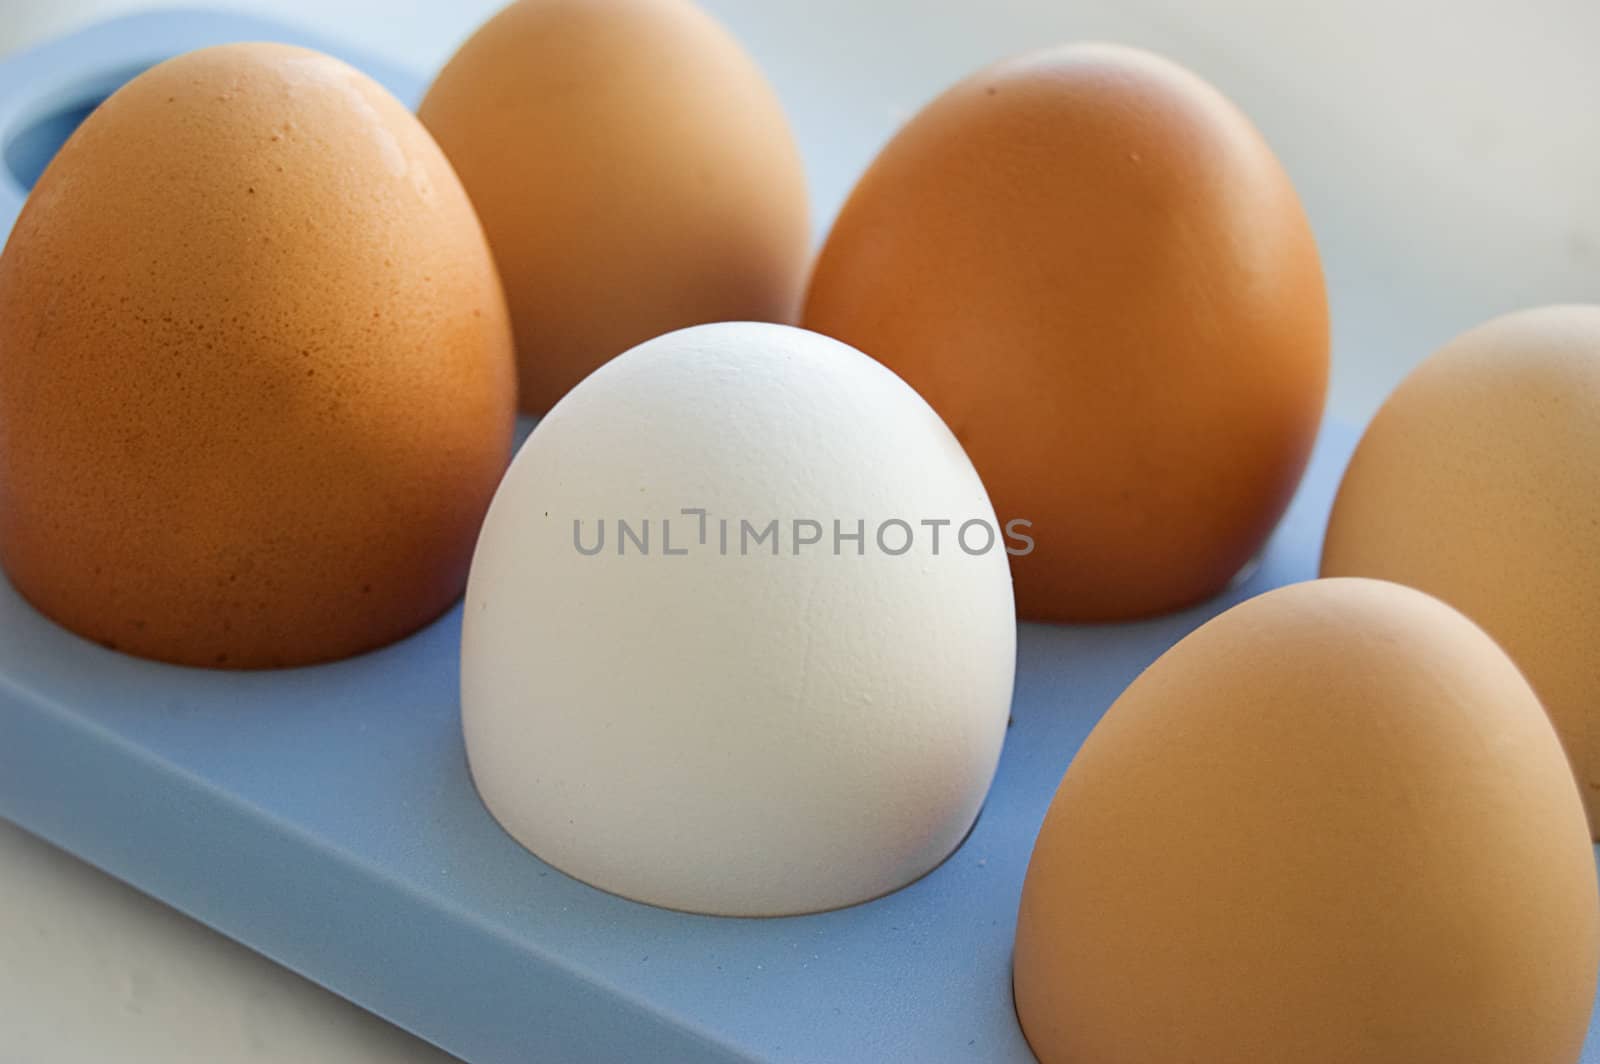 One white egg among brown eggs